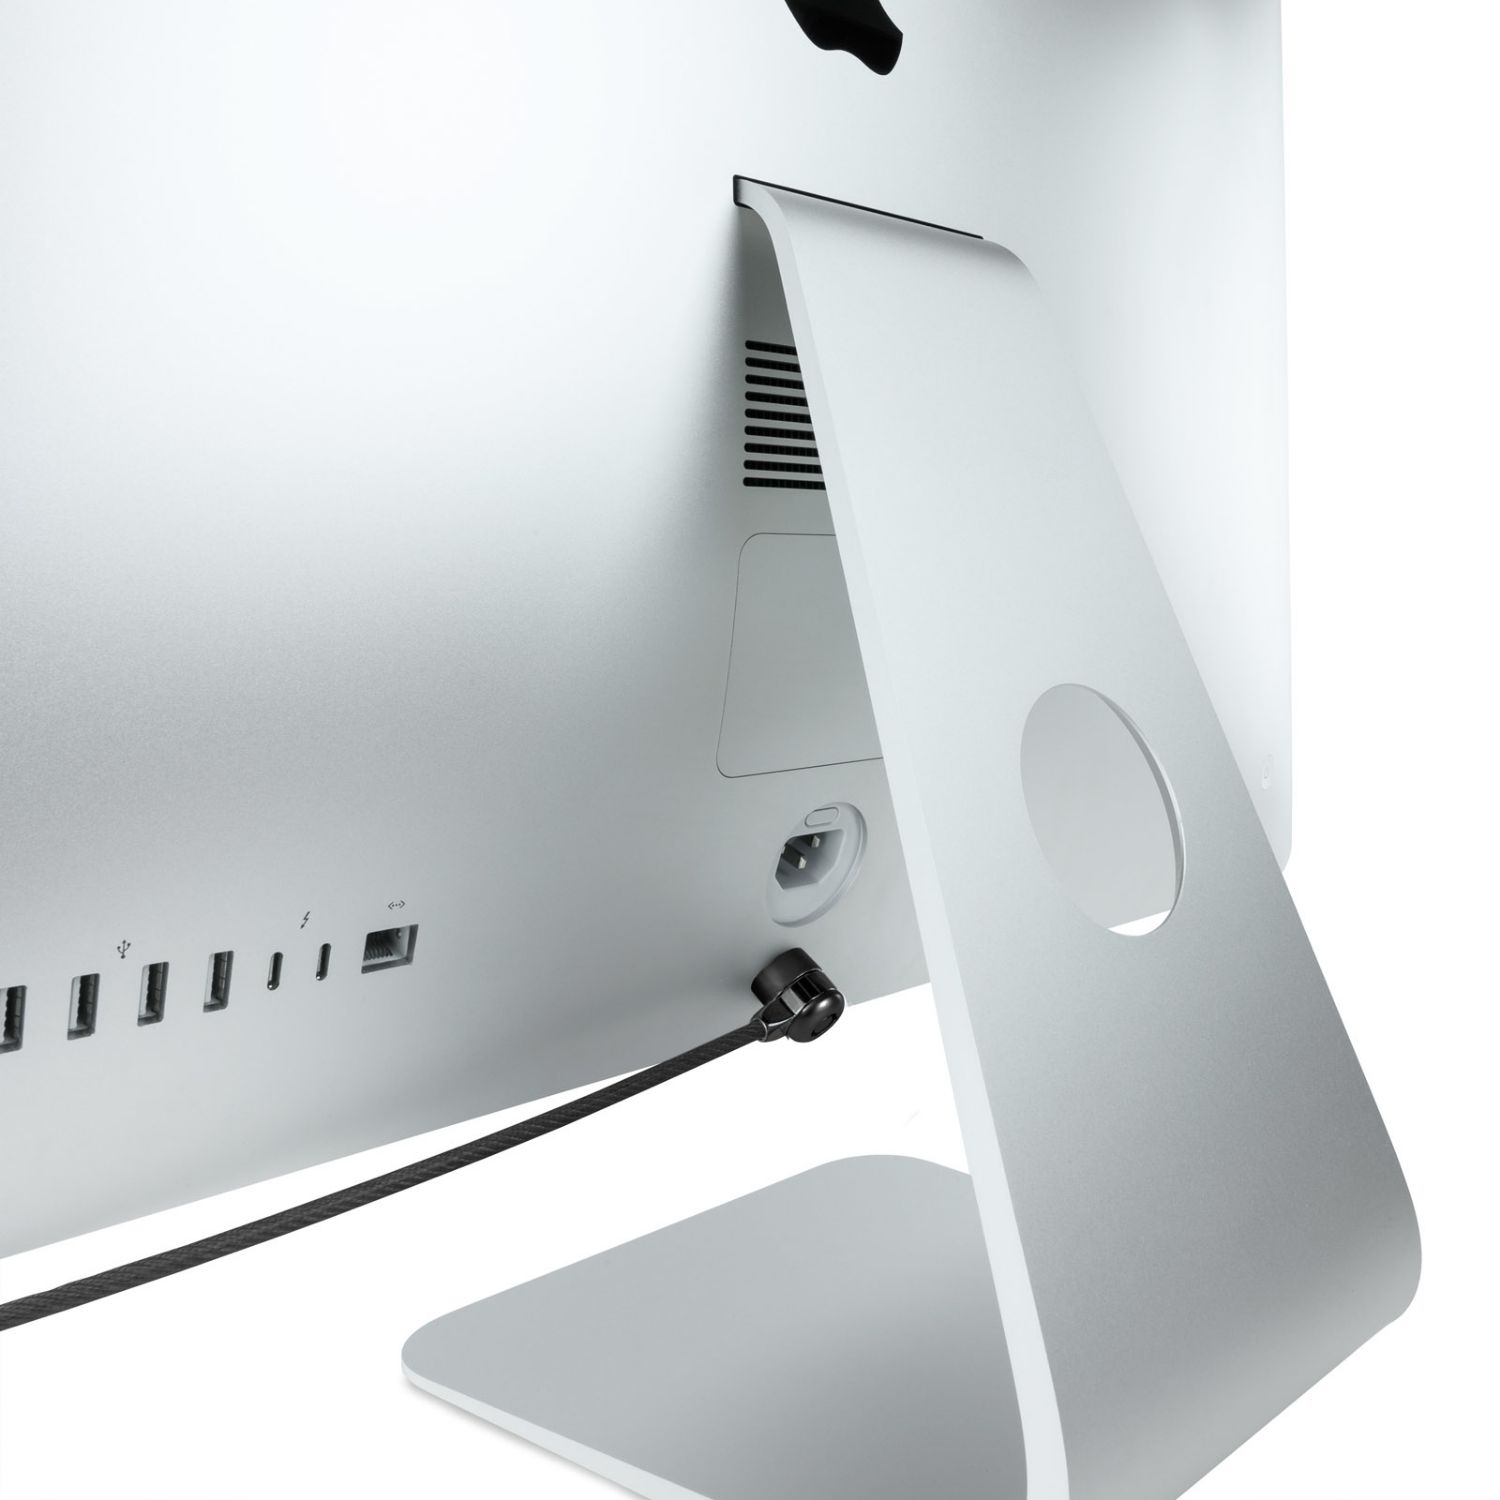 TQCLKC0025-G - Cable de Seguridad TOOQ para portatiles, 1.5m, Bloqueo con cerradura de seguridad, gris oscuro,  (TQCLKC0025-G)